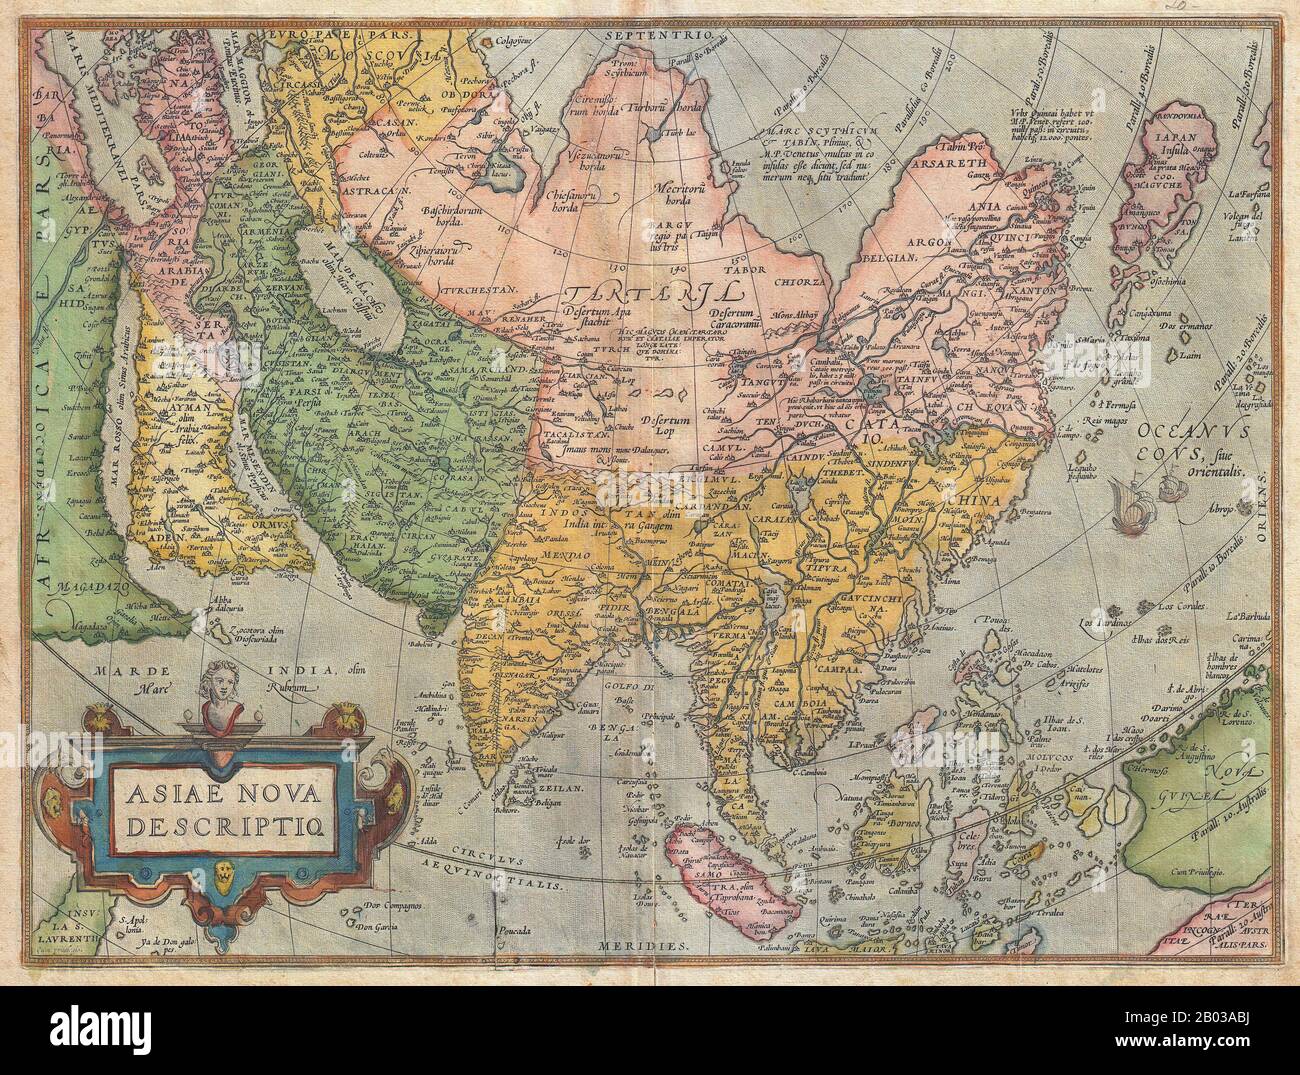 Abraham Ortelius (1527-1598) war ein brabantianischer Kartograf und Geograph, der als Schöpfer des ersten modernen Atlas, des "Theatrum Orbis Terrarum" (Theater der Welt), bekannt ist. Er war eine der bemerkenswertesten Persönlichkeiten in der niederländischen Kartografieschule in ihrem goldenen Zeitalter (ca. 1570er bis 1670er Jahre), seine Veröffentlichung seines Atlas im Jahre 1570 wurde als offizieller Anfang angesehen. Stockfoto